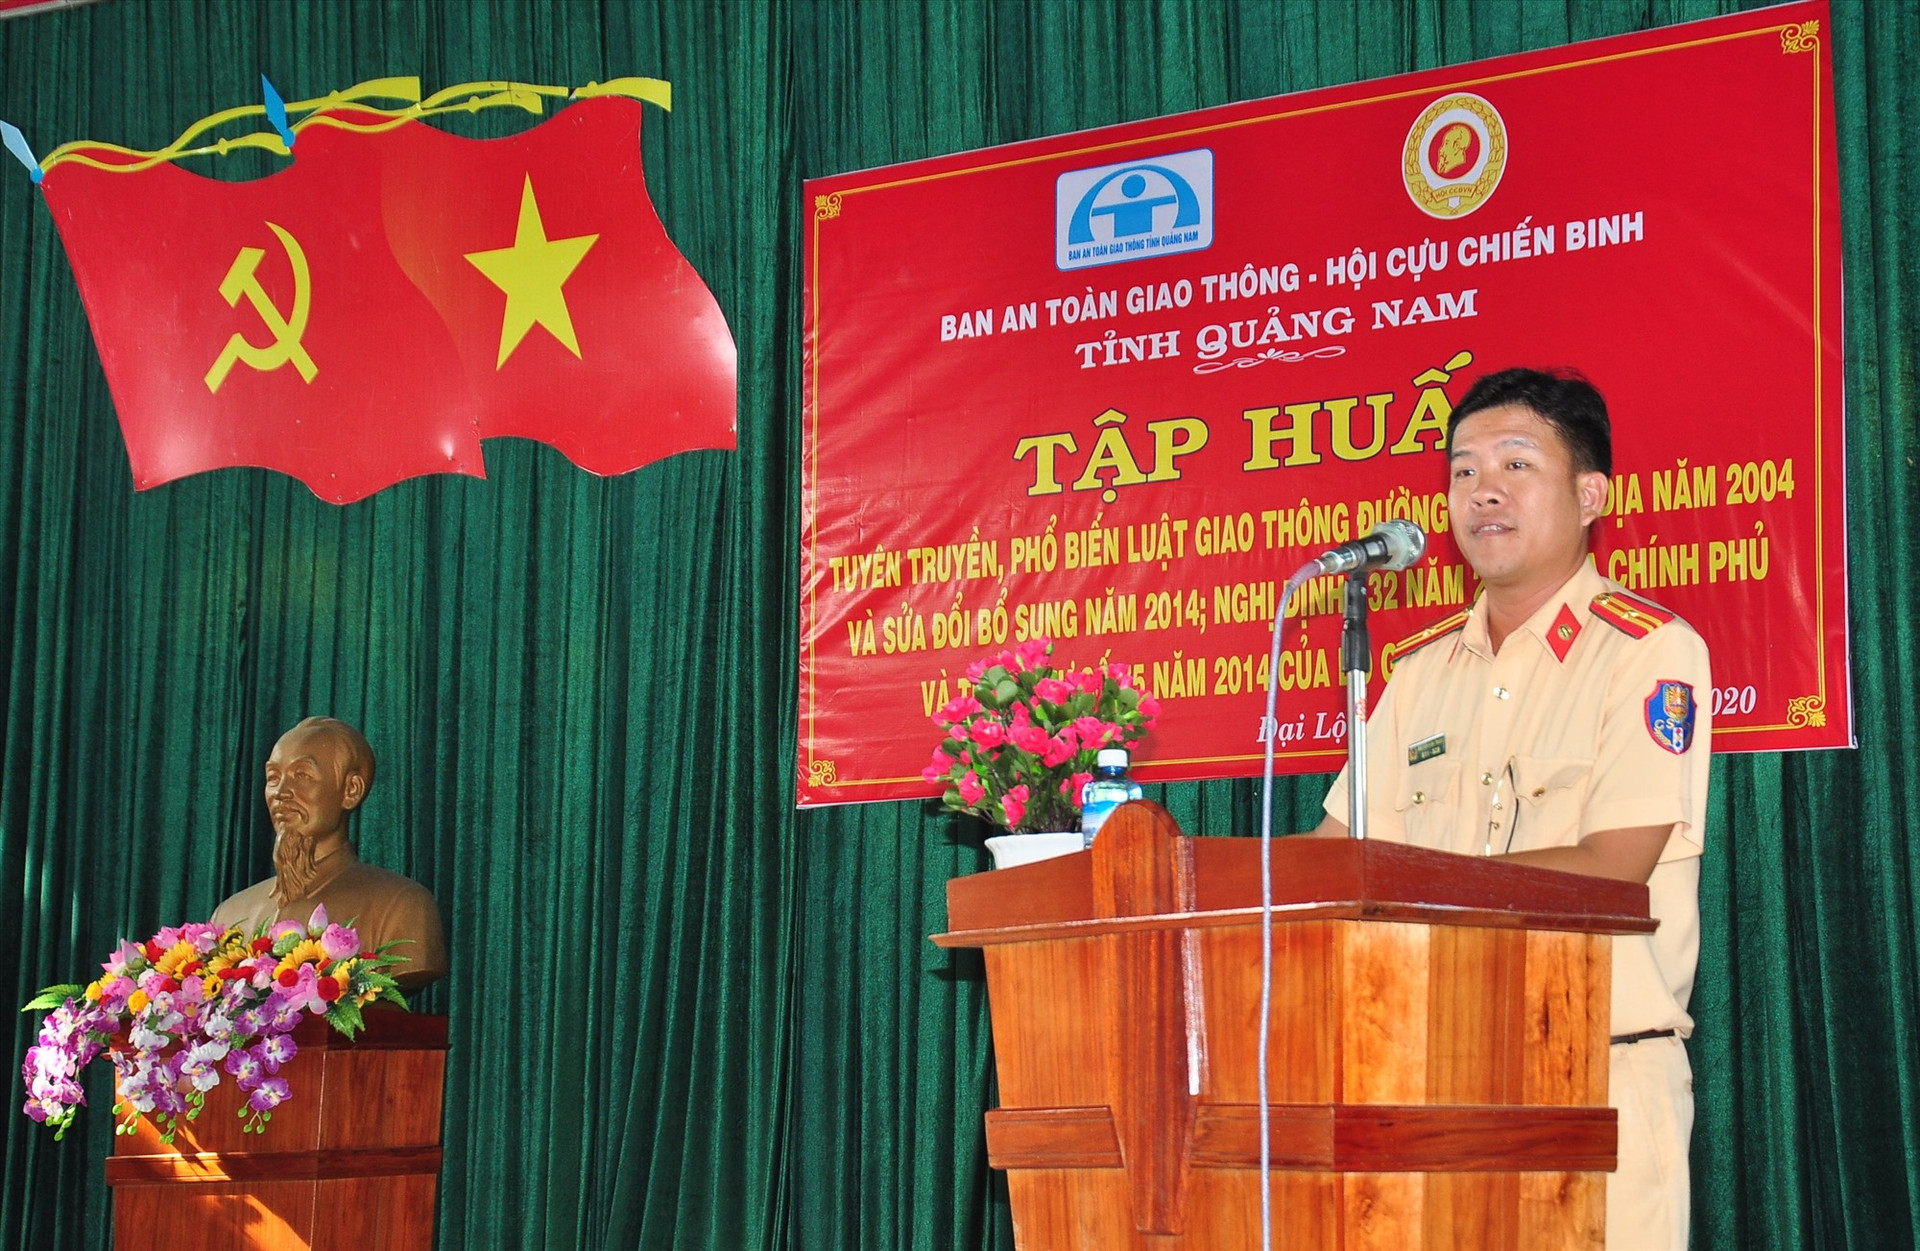 Thiếu tá Nguyễn Đình Thắng, báo cáo viên Phòng Cảnh sát giao thông đường thủy phổ biến các nội dung tại hội nghị tập huấn. Ảnh: VINH ANH